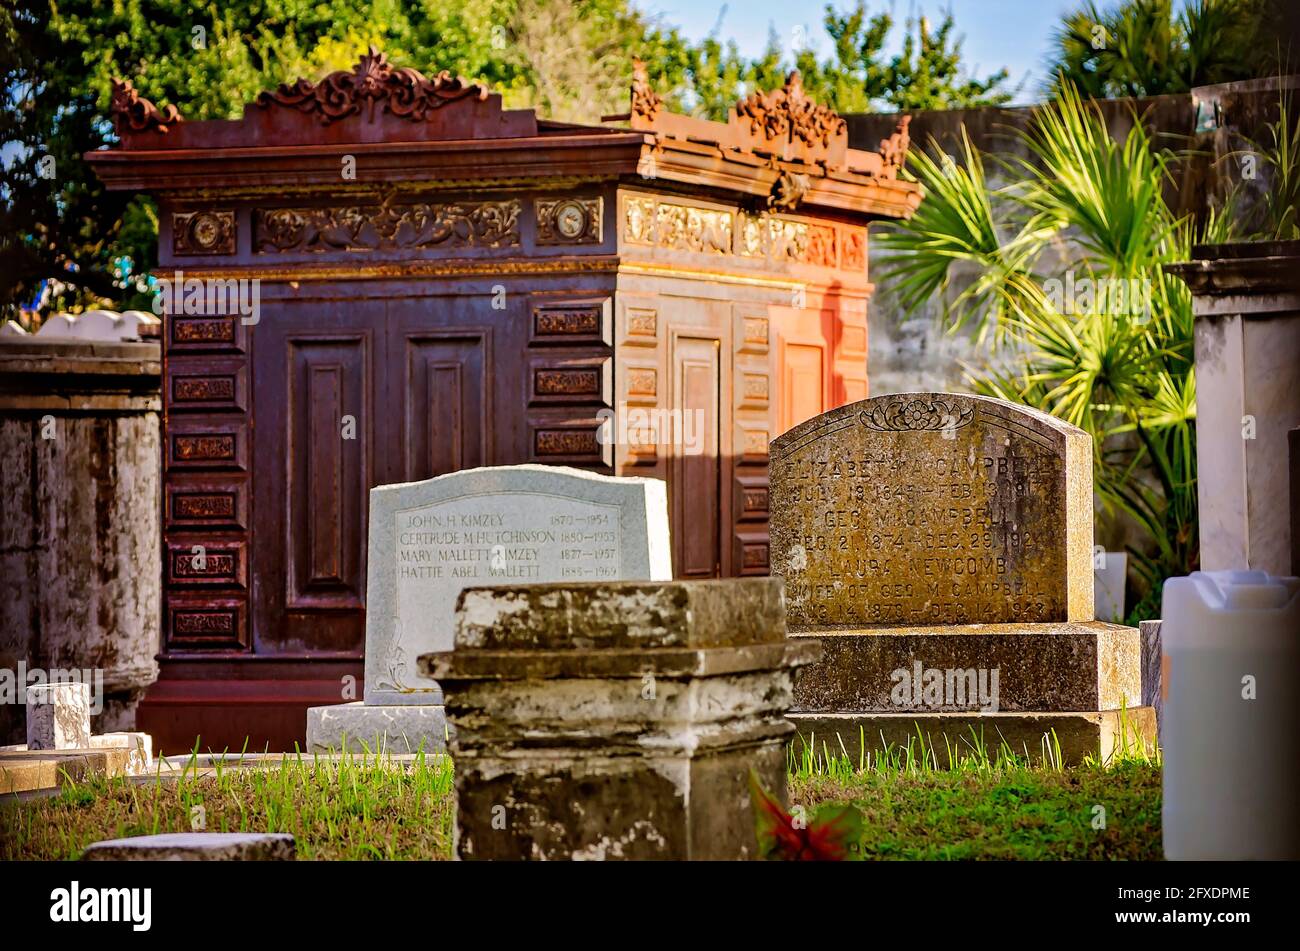 Tombe sopra terra sono raffigurate al cimitero di riposo Odd Fellows, 14 novembre 2015, a New Orleans, Louisiana. Foto Stock